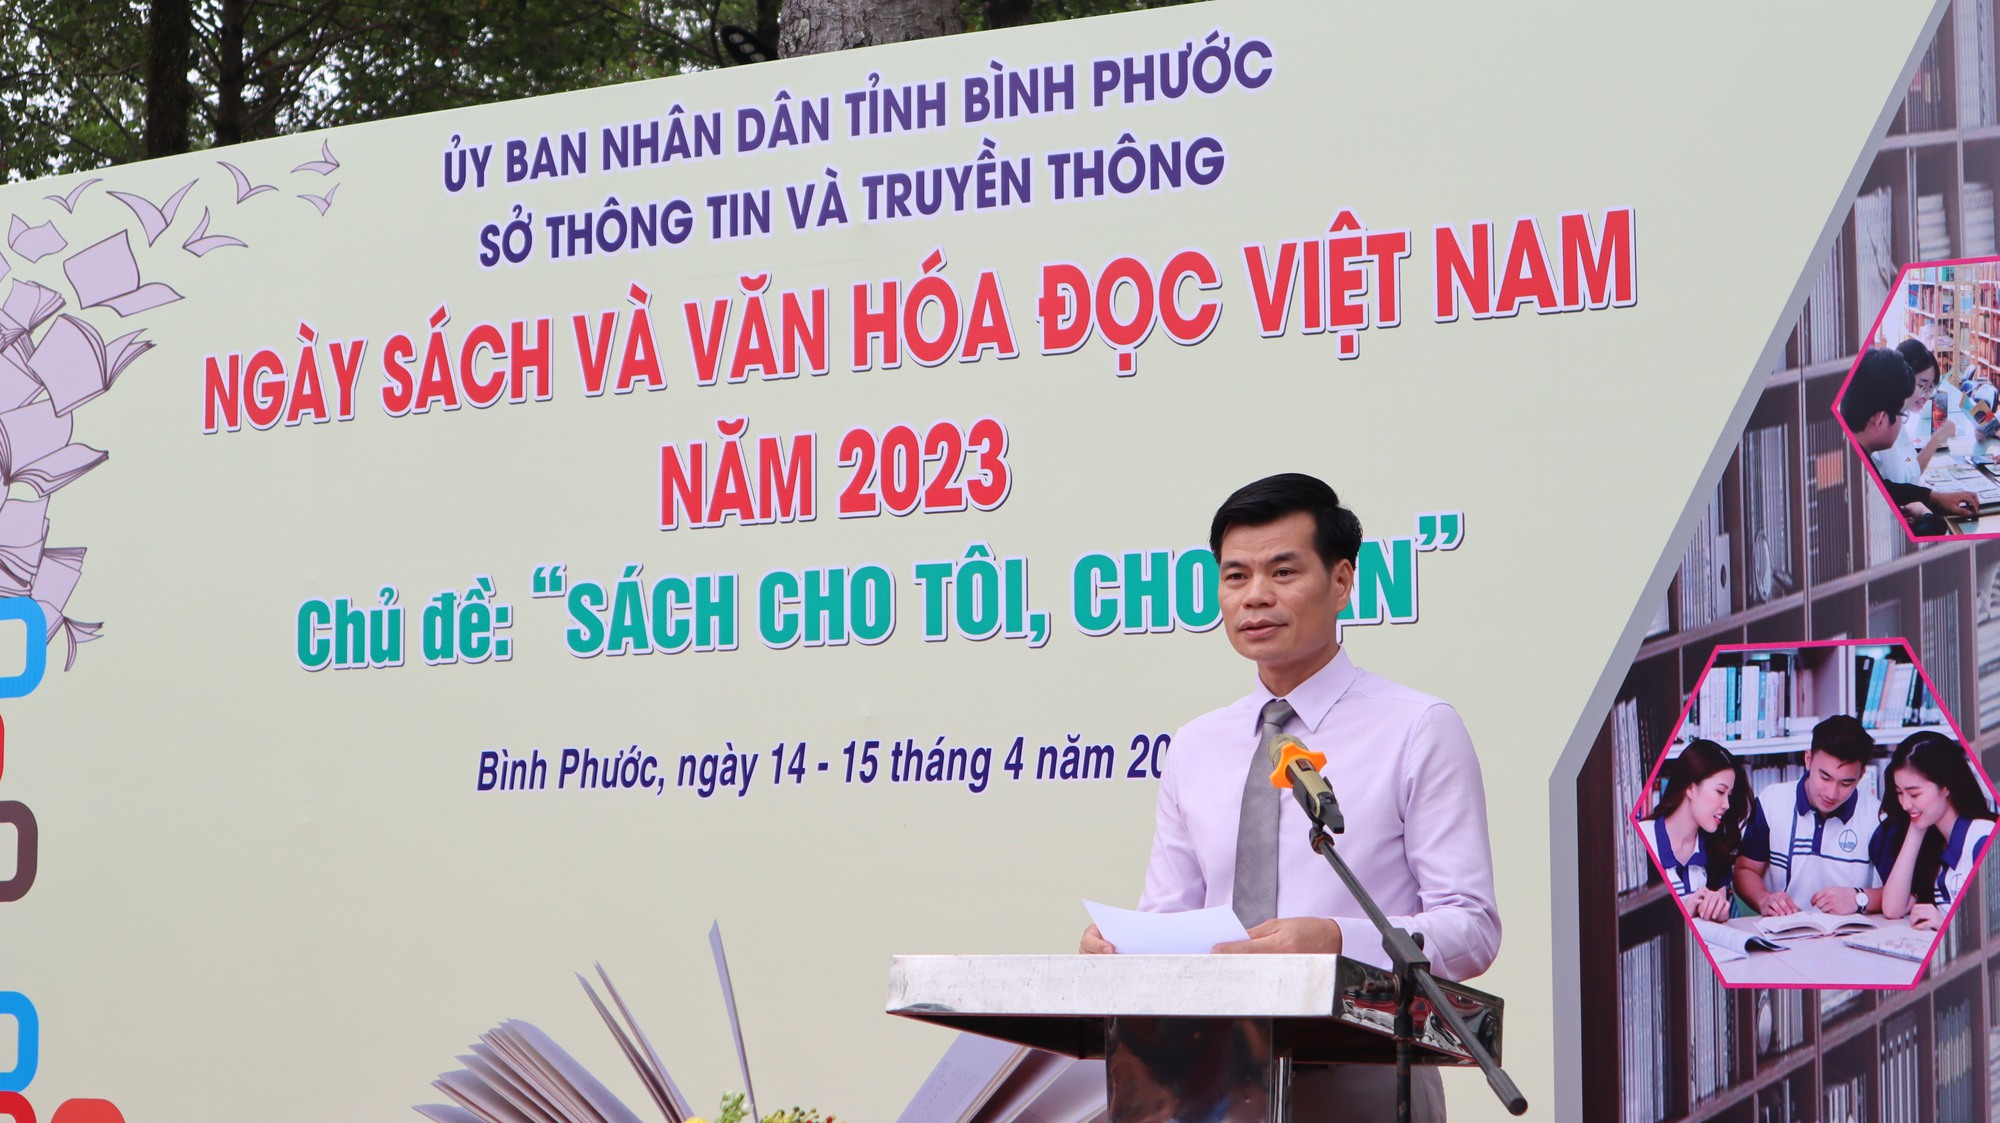 Bình Phước: Tổ chức Ngày sách và Văn hóa đọc Việt Nam năm 2023 - Ảnh 1.